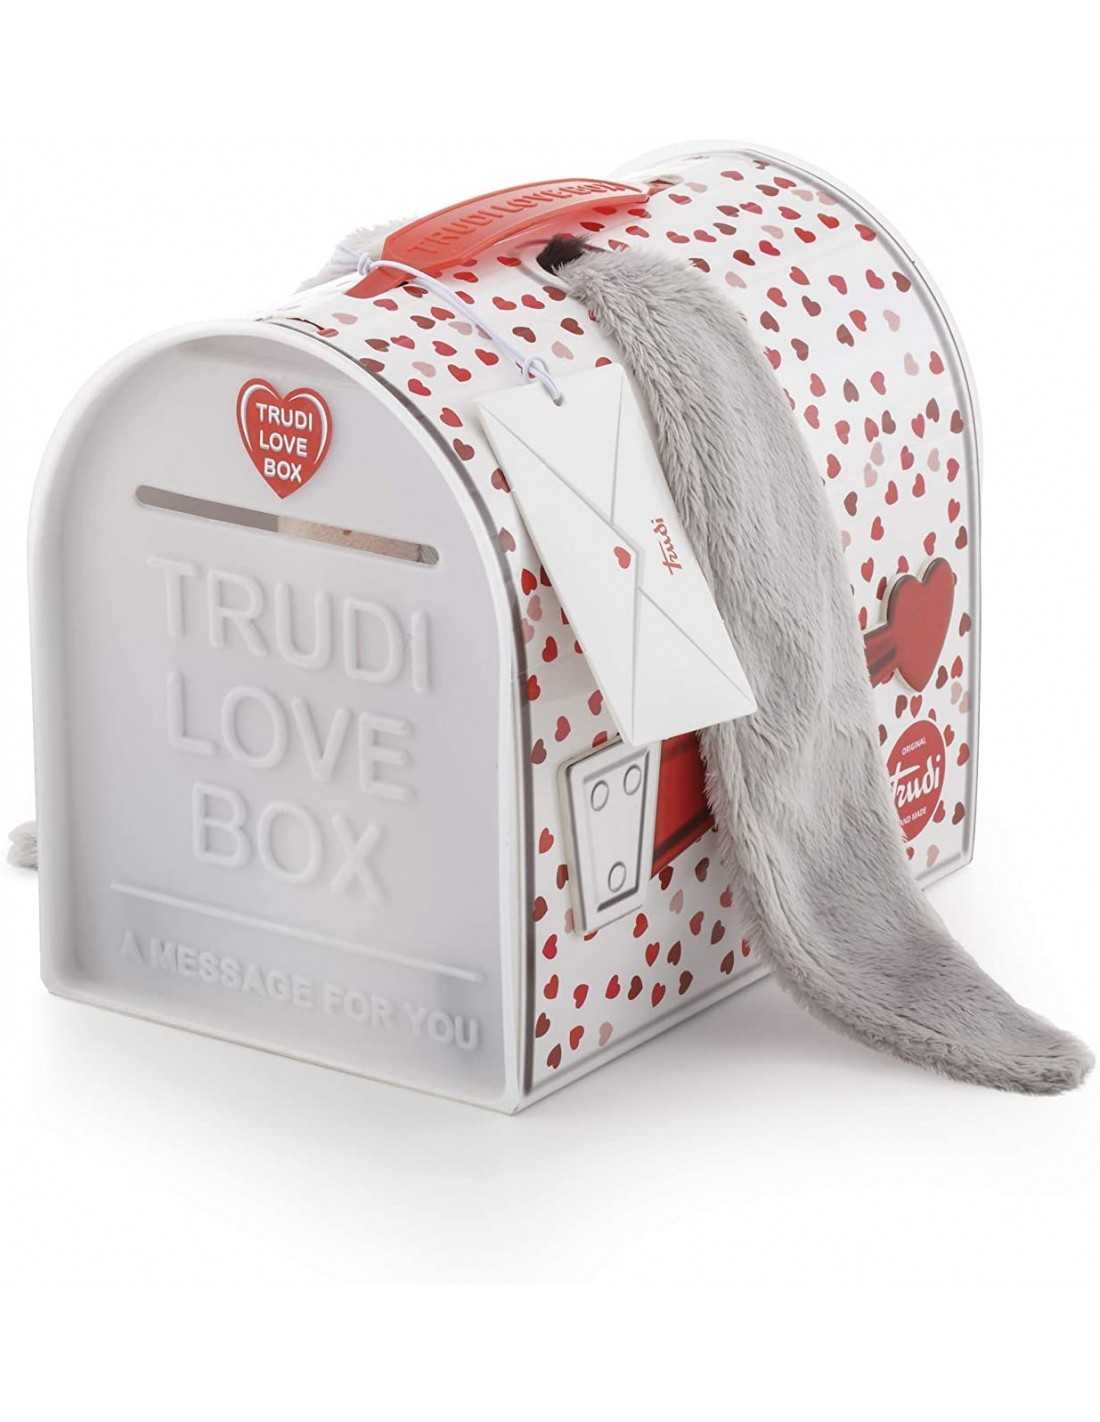 Love Box Trudi " Asinello "